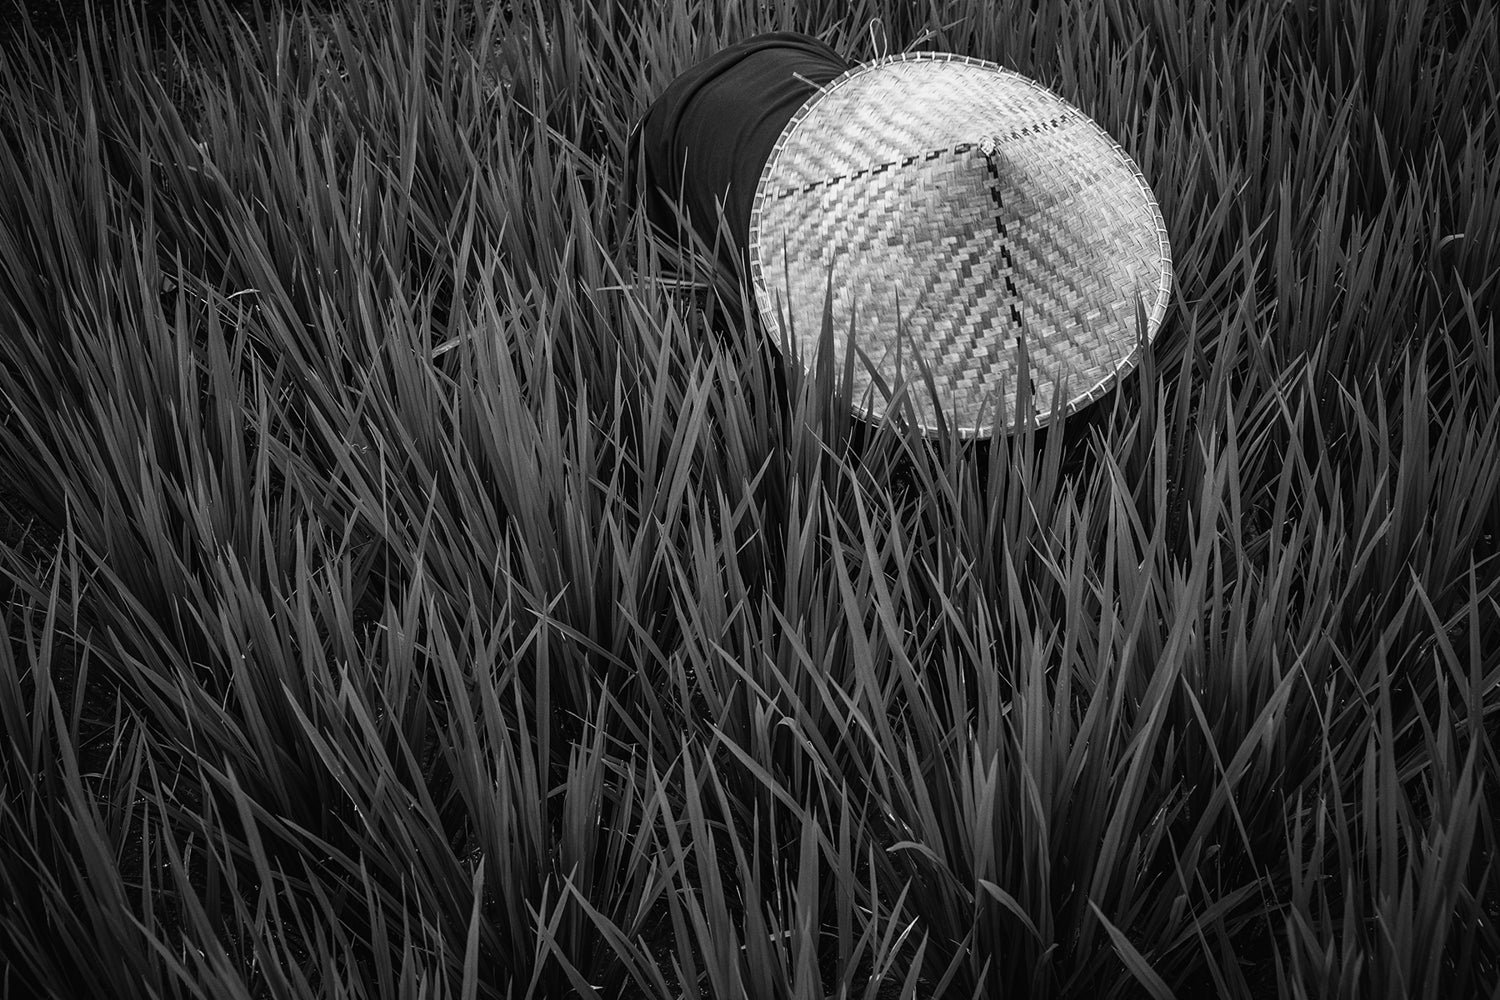 Fototapete Rice Fields In Bw